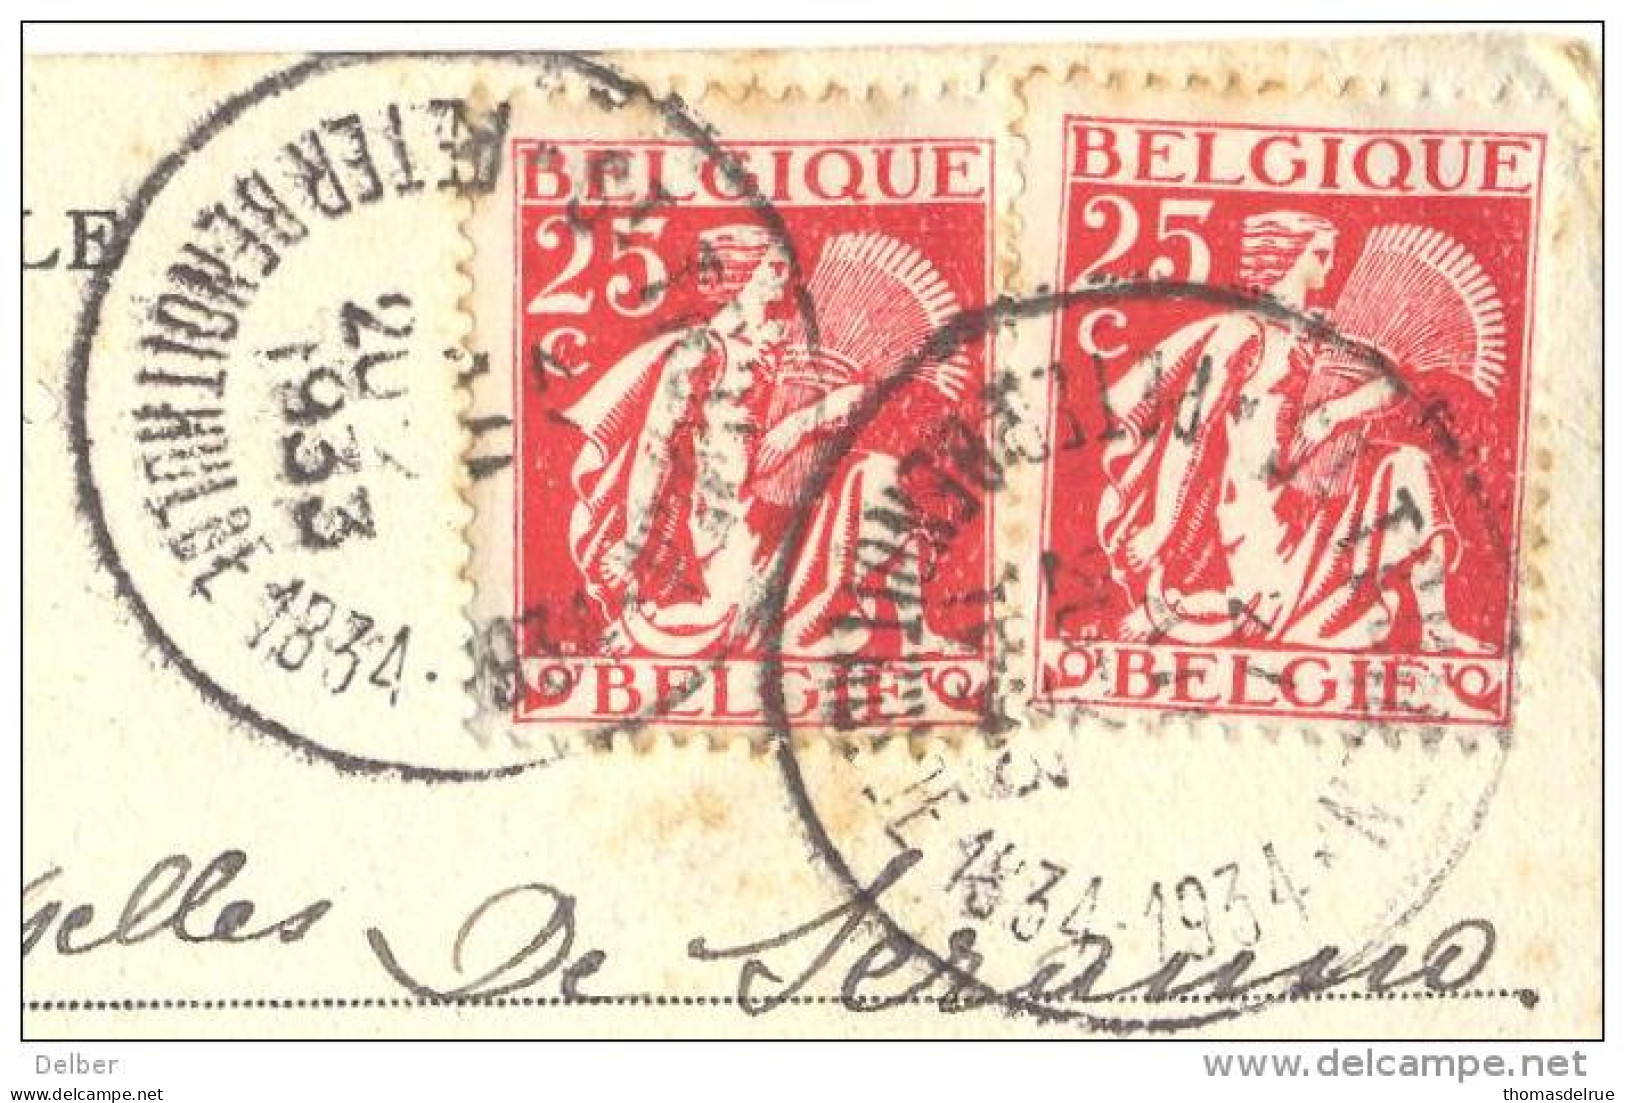 _ik174: N° 339+339::ST-TRUIDEN PETER BENOITHULDE 1834-1934... Op Fantasie Kaartje Met Verknipte Postzegels..HOUYOUX... - 1932 Ceres Und Mercure